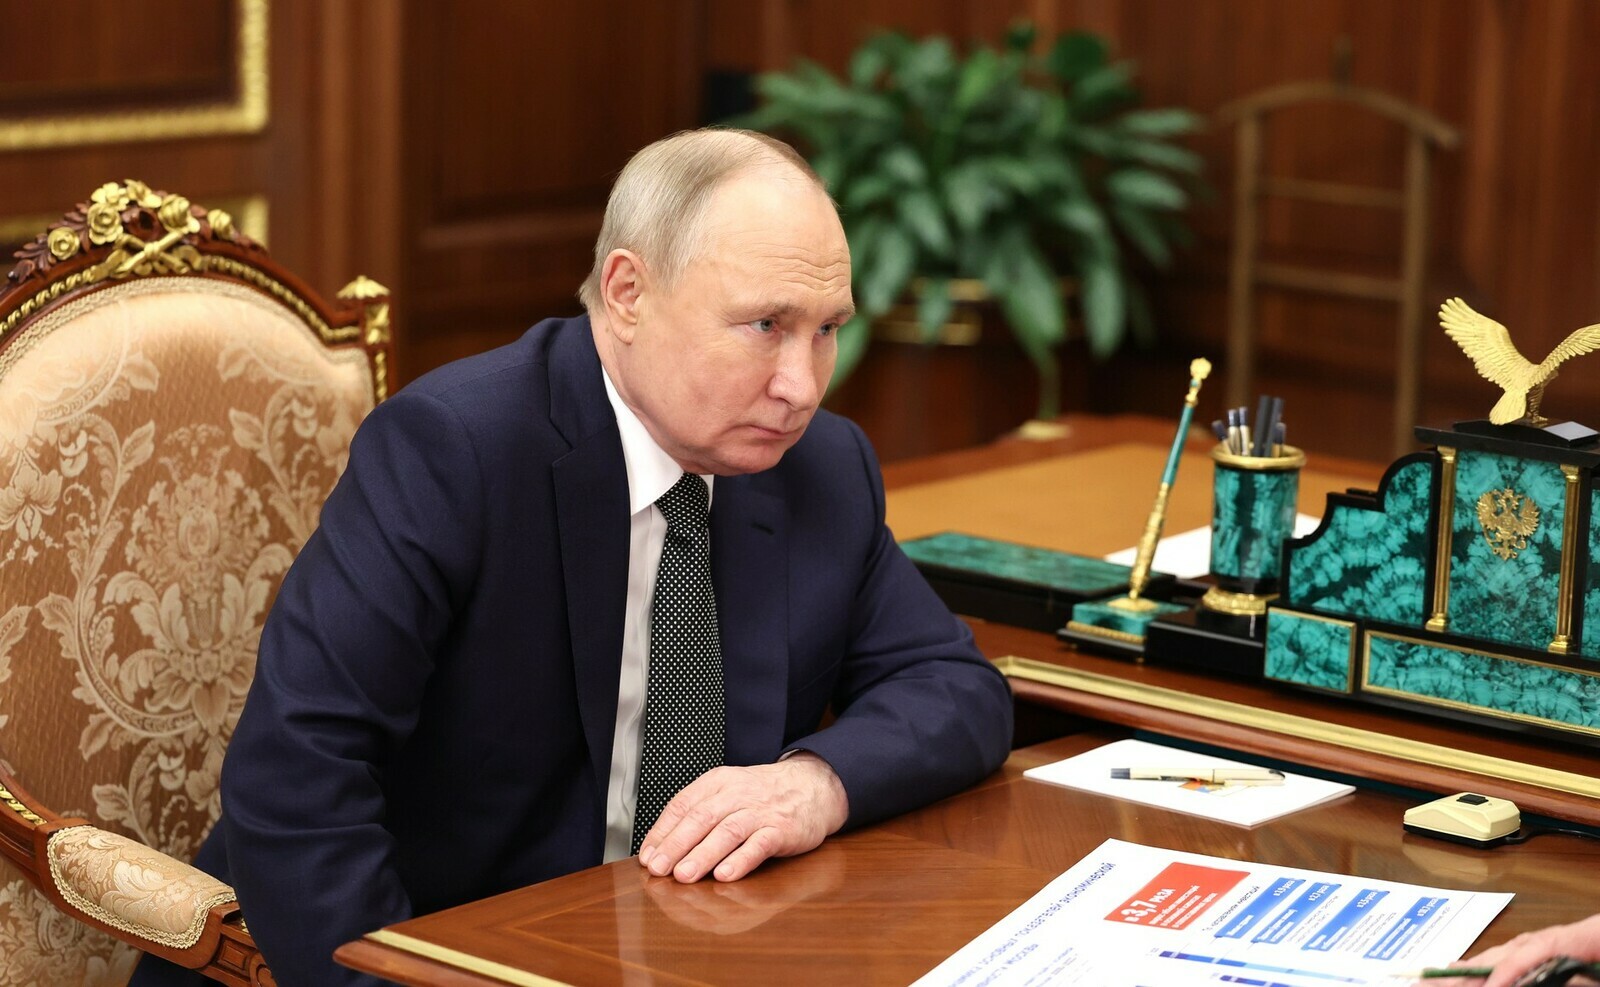 Путин фронтра мӗн пулса иртни ҫинчен онлайн режимра даннӑйсем илет